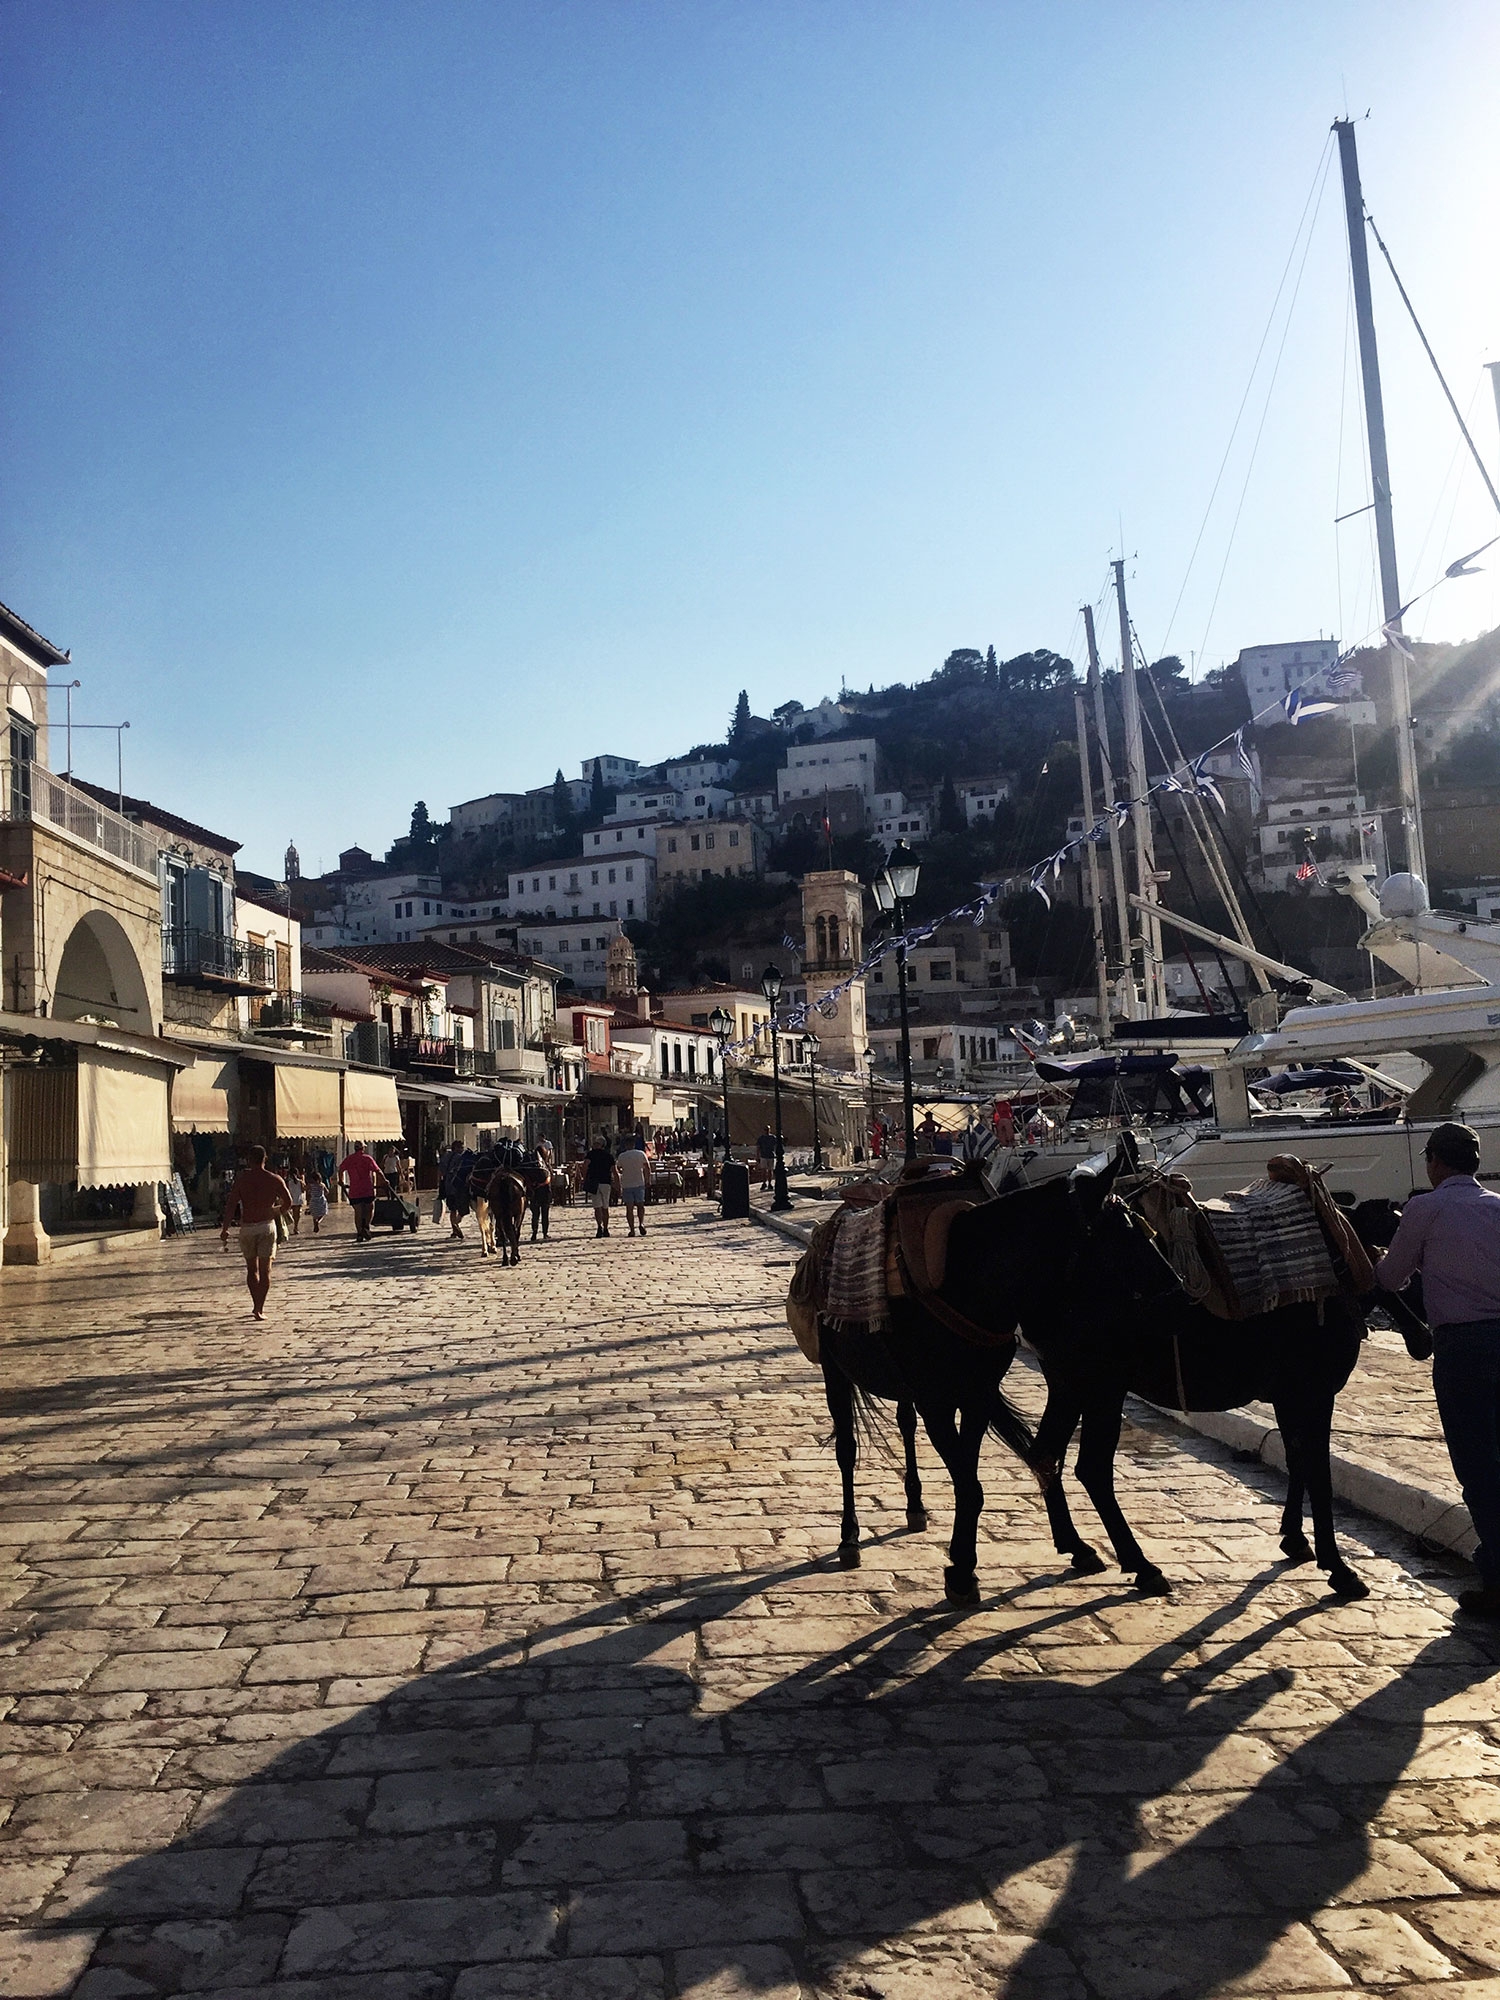 Groups walking along The Port next to docked boats and saddled donkeys 